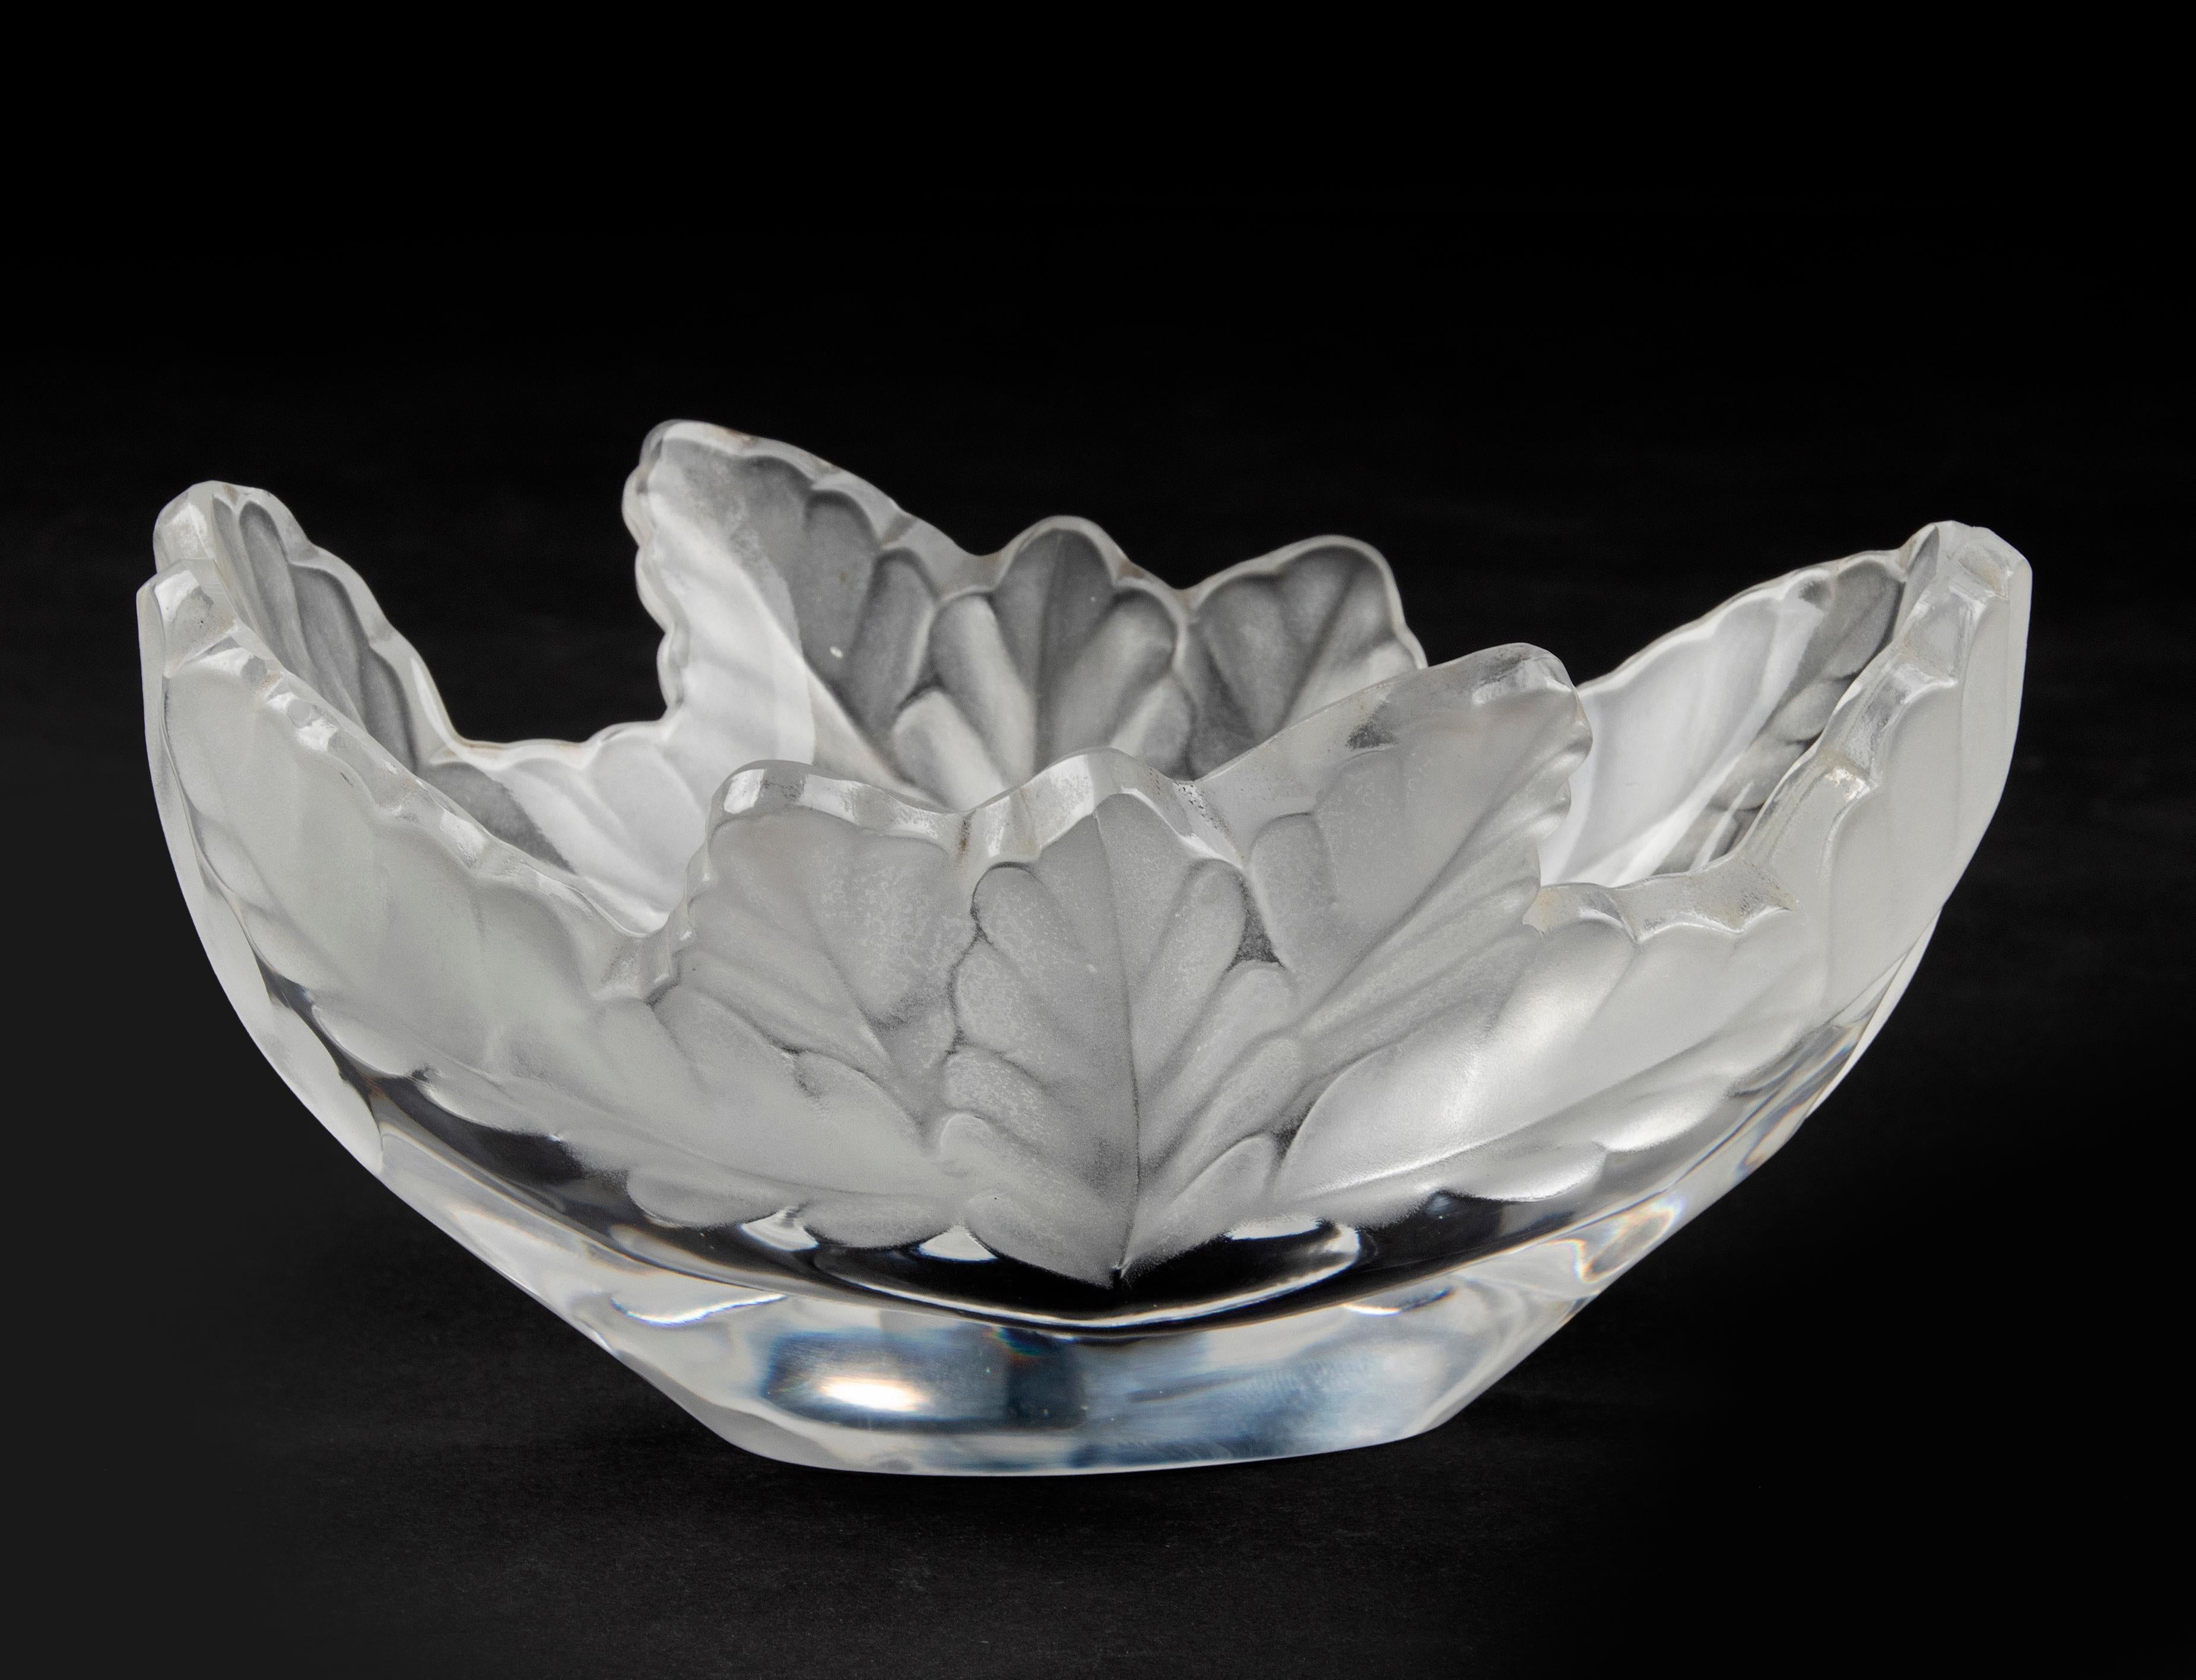 Schöne Kristallschale der französischen Marke Lalique. Der Kristall hat die Form eines Eichenblatts und ist außen satiniert. Das Modell heißt 